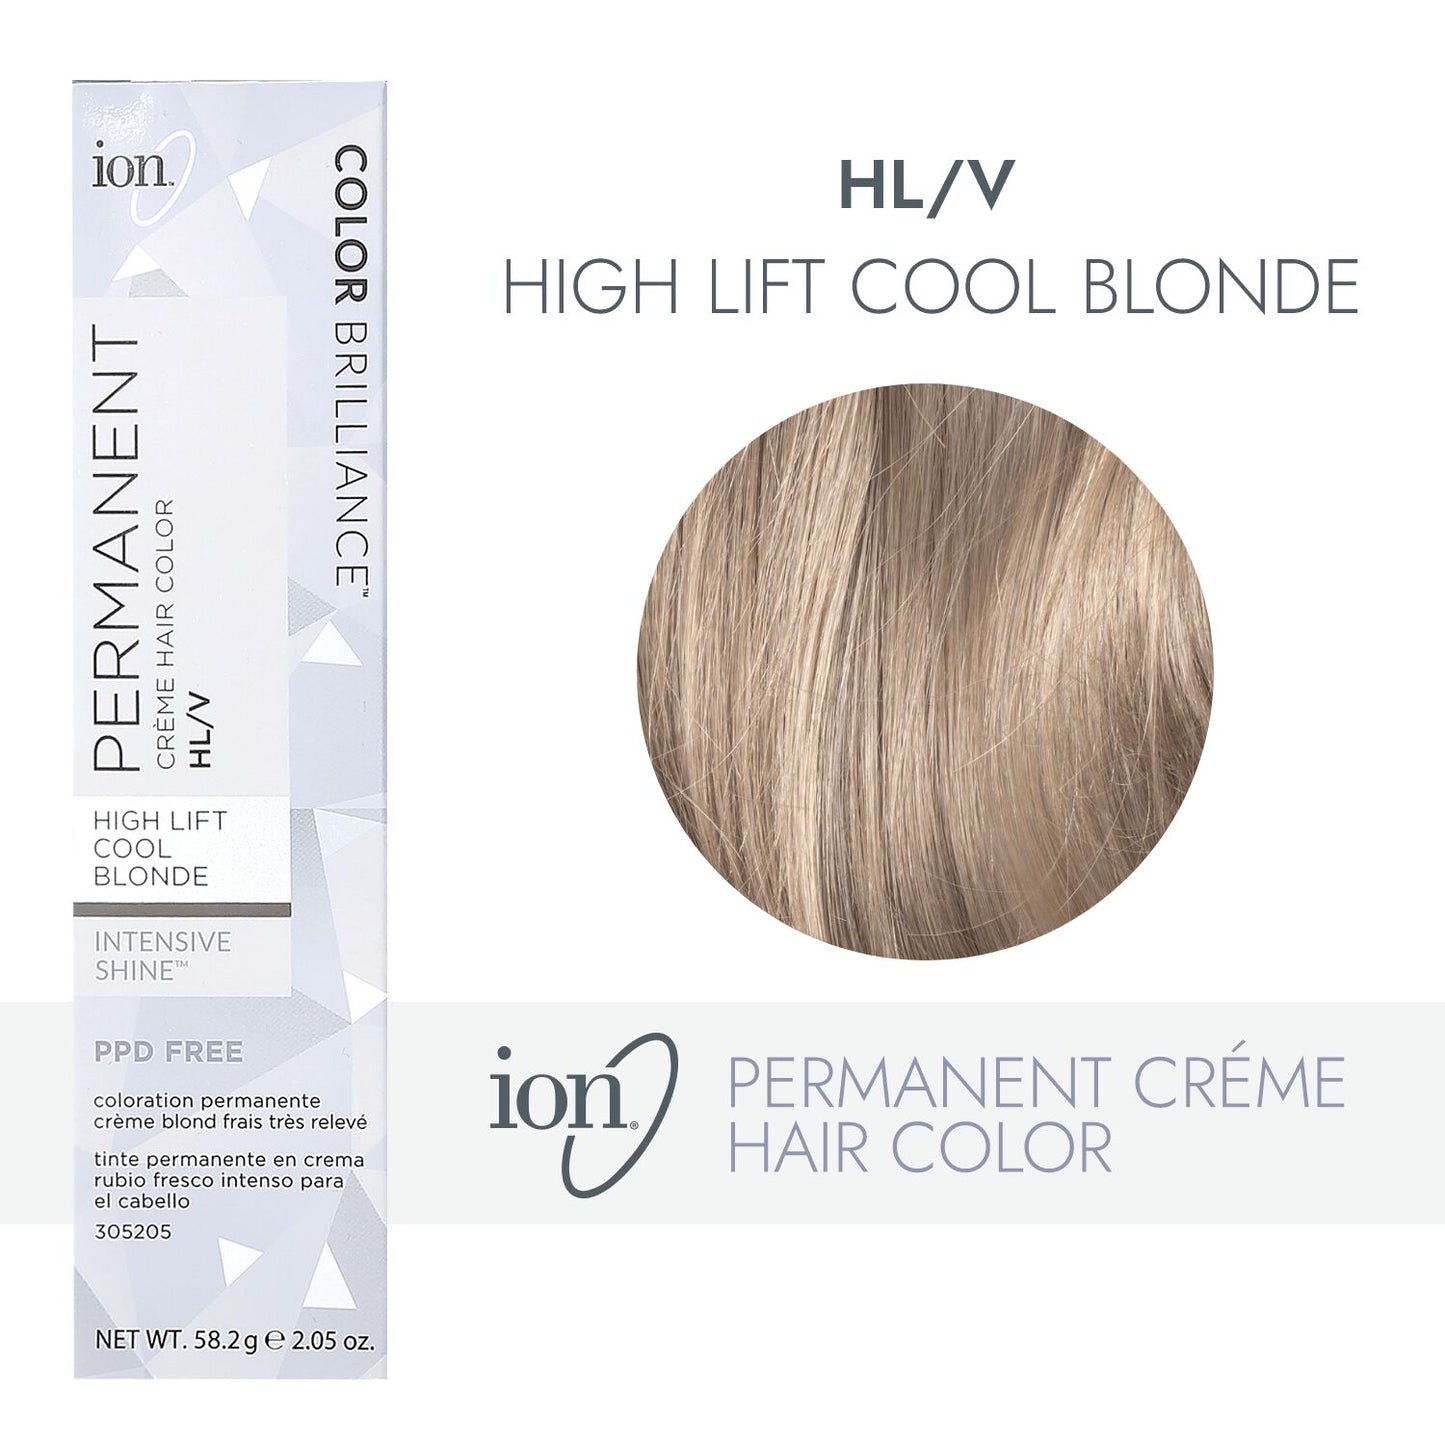 ion HL-V Hi Lift Cool Blonde Permanent Creme Hair Color